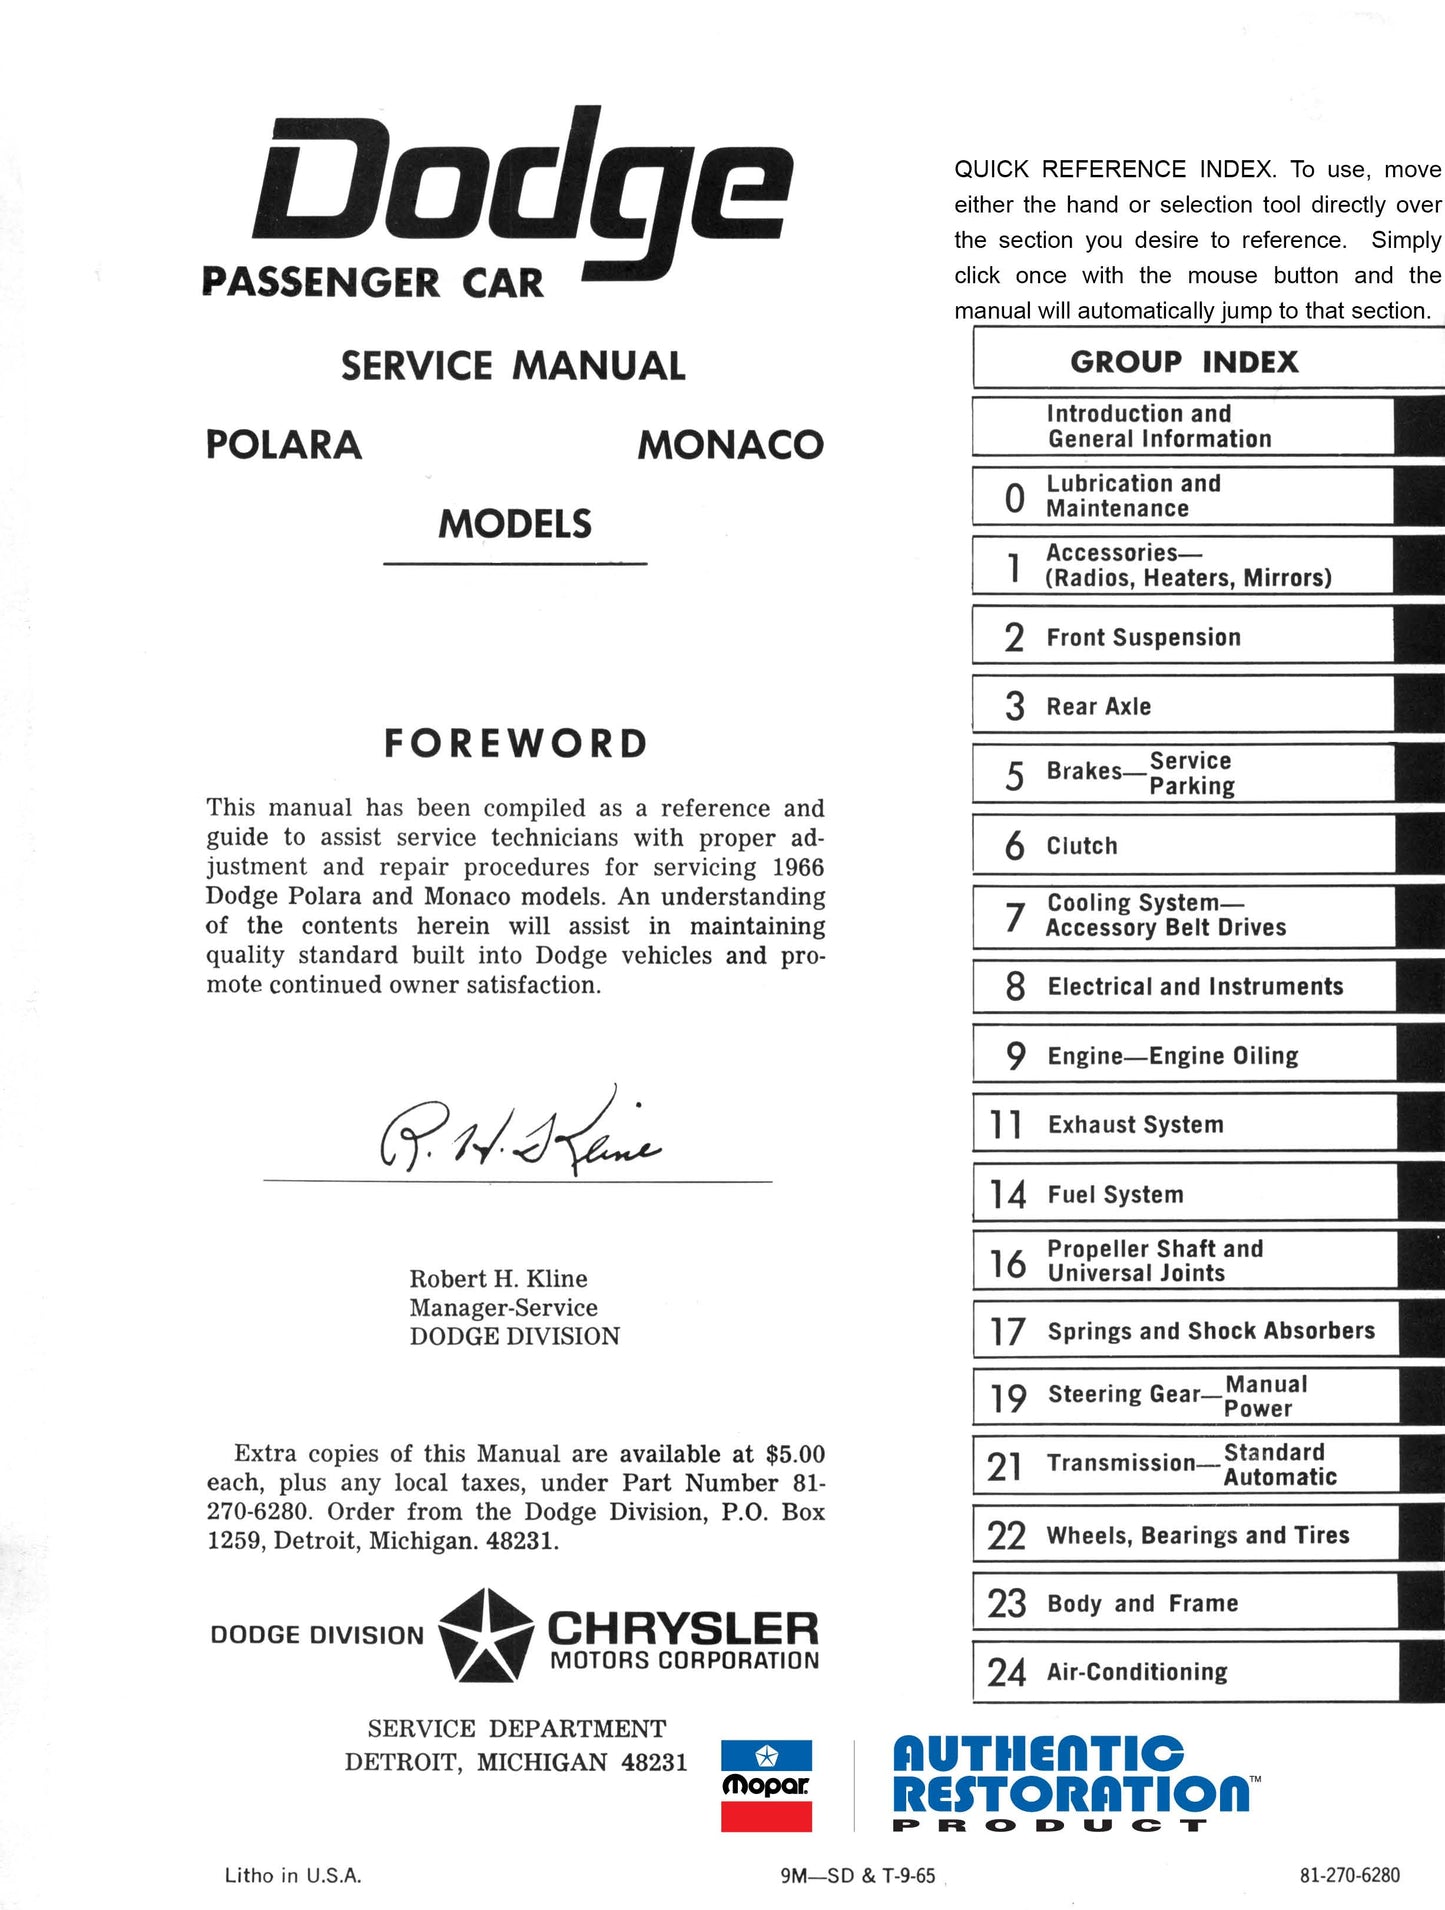 1966 Dodge Service Manuals - All Models